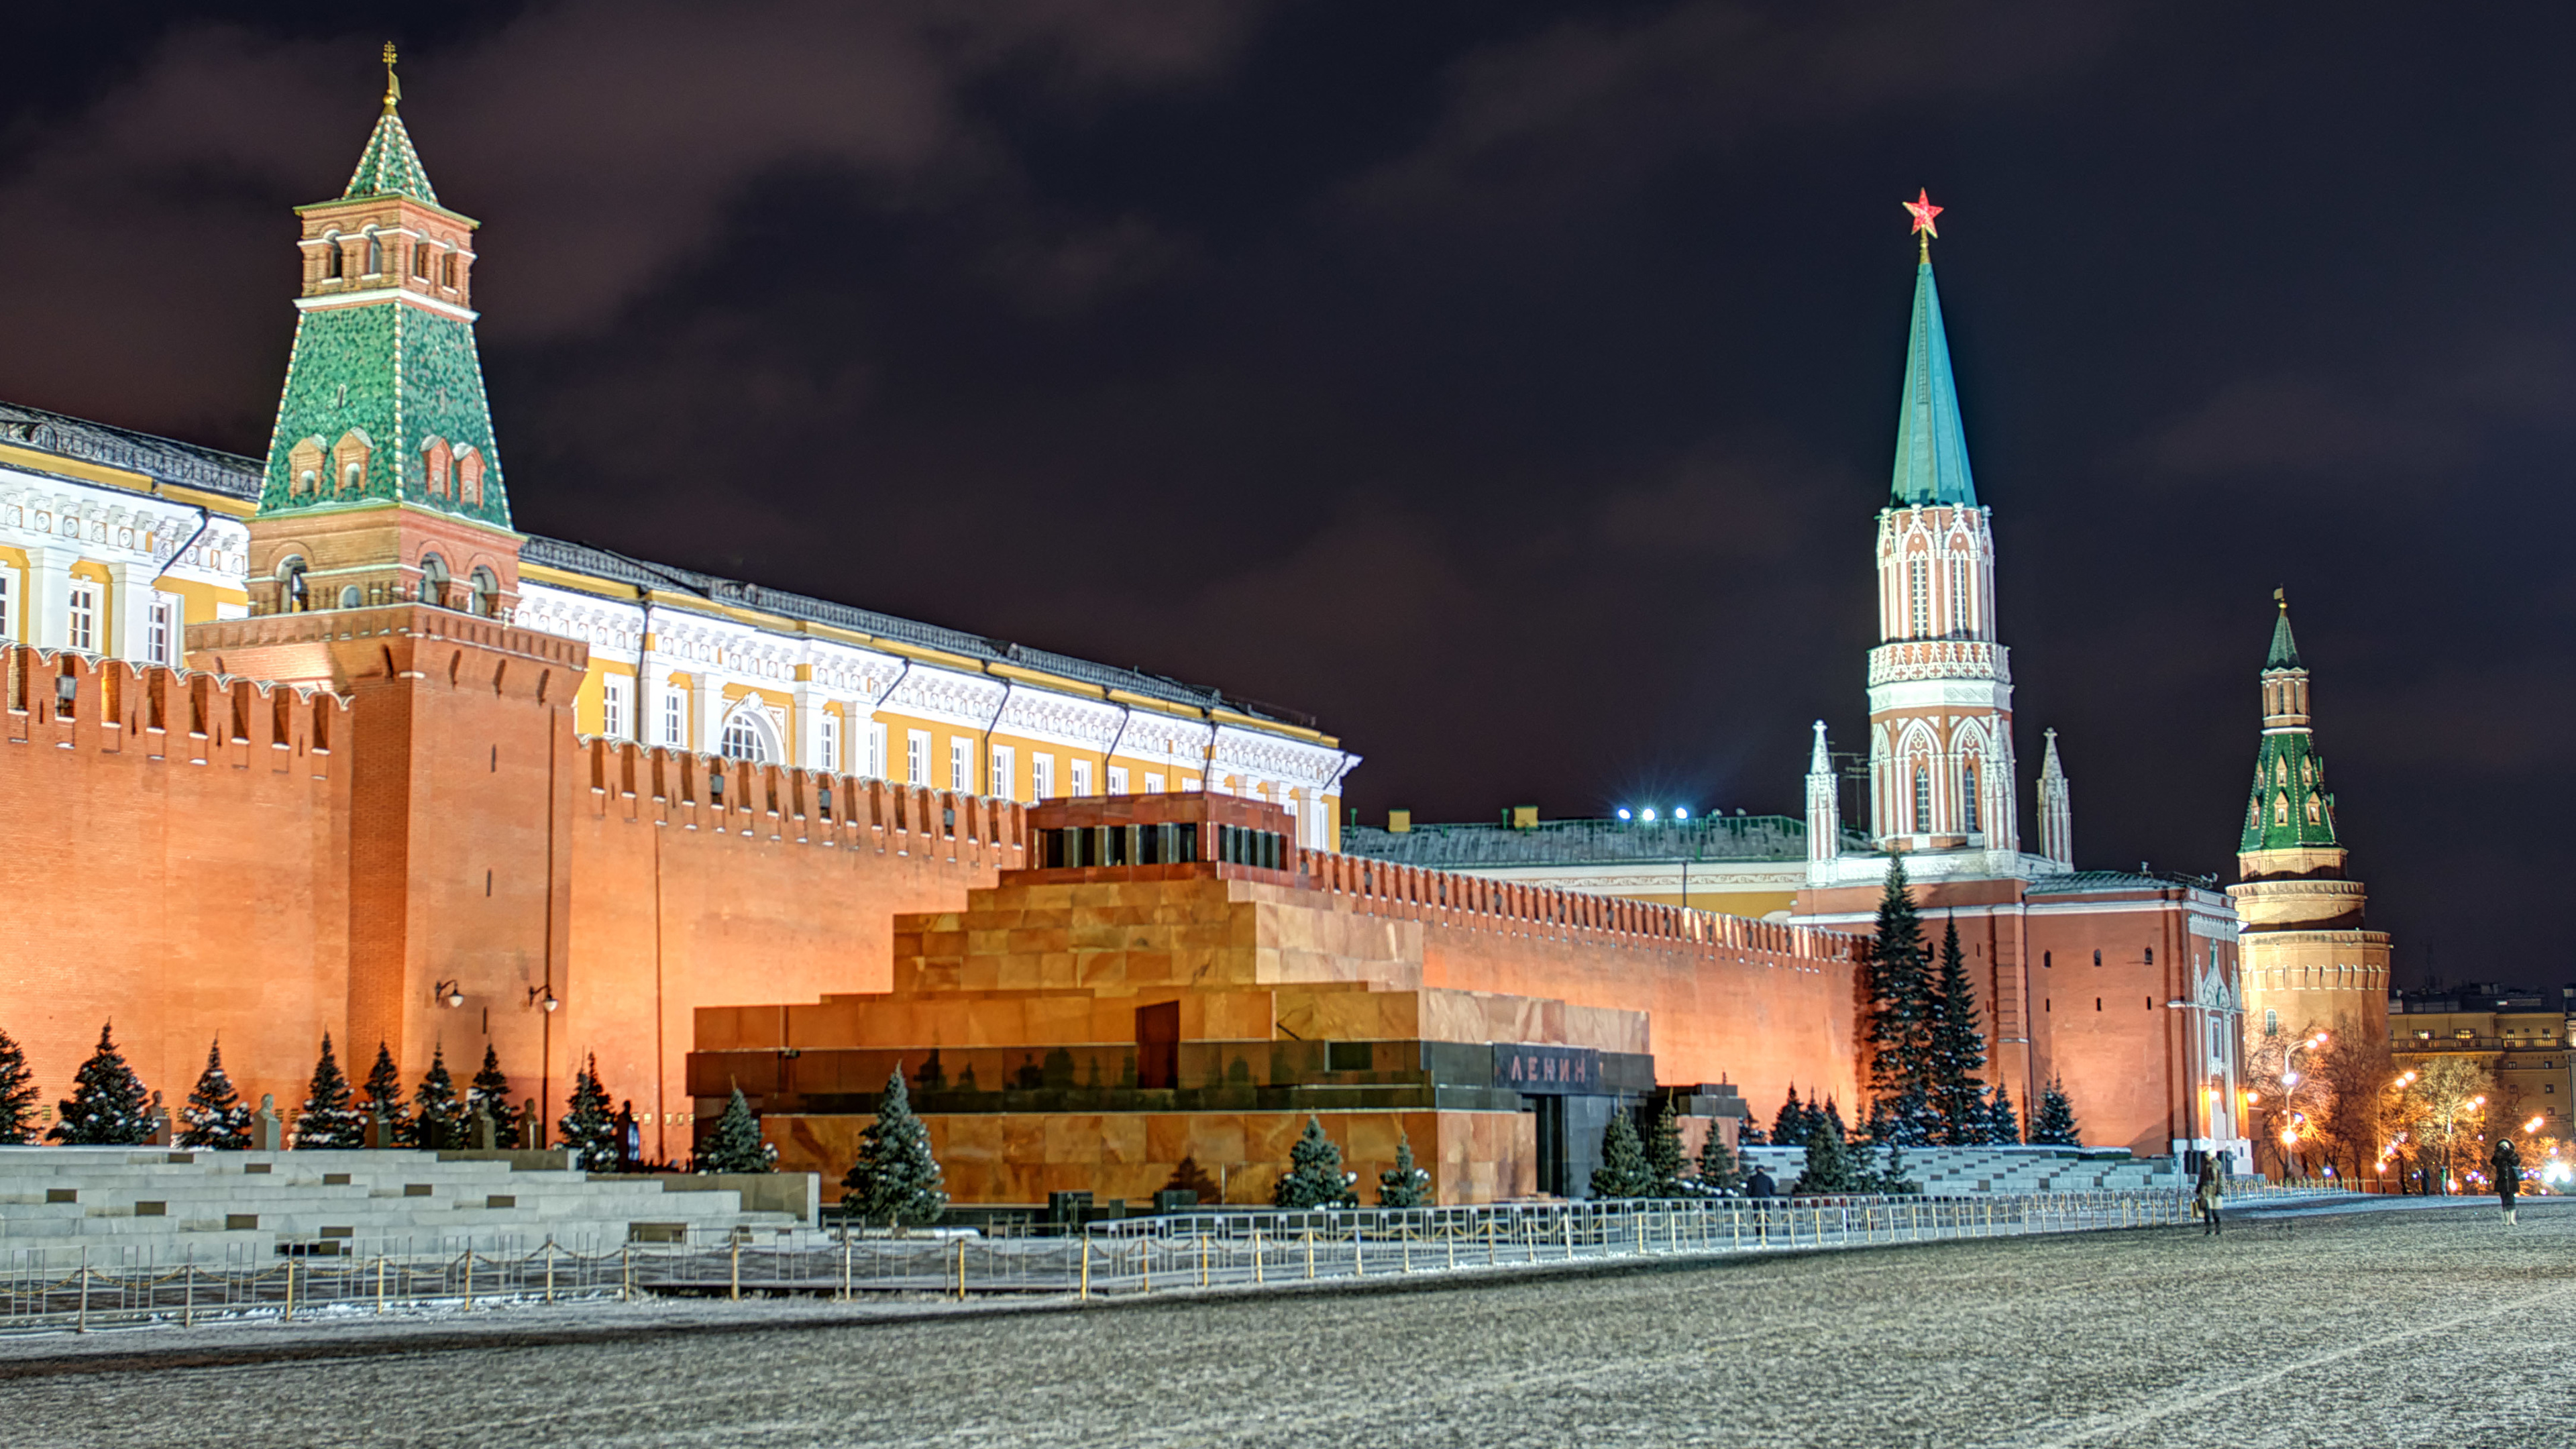 壁紙 3840x2160 モスクワ ロシア クレムリン Lenin S Mausoleum 広場 夜 都市 ダウンロード 写真